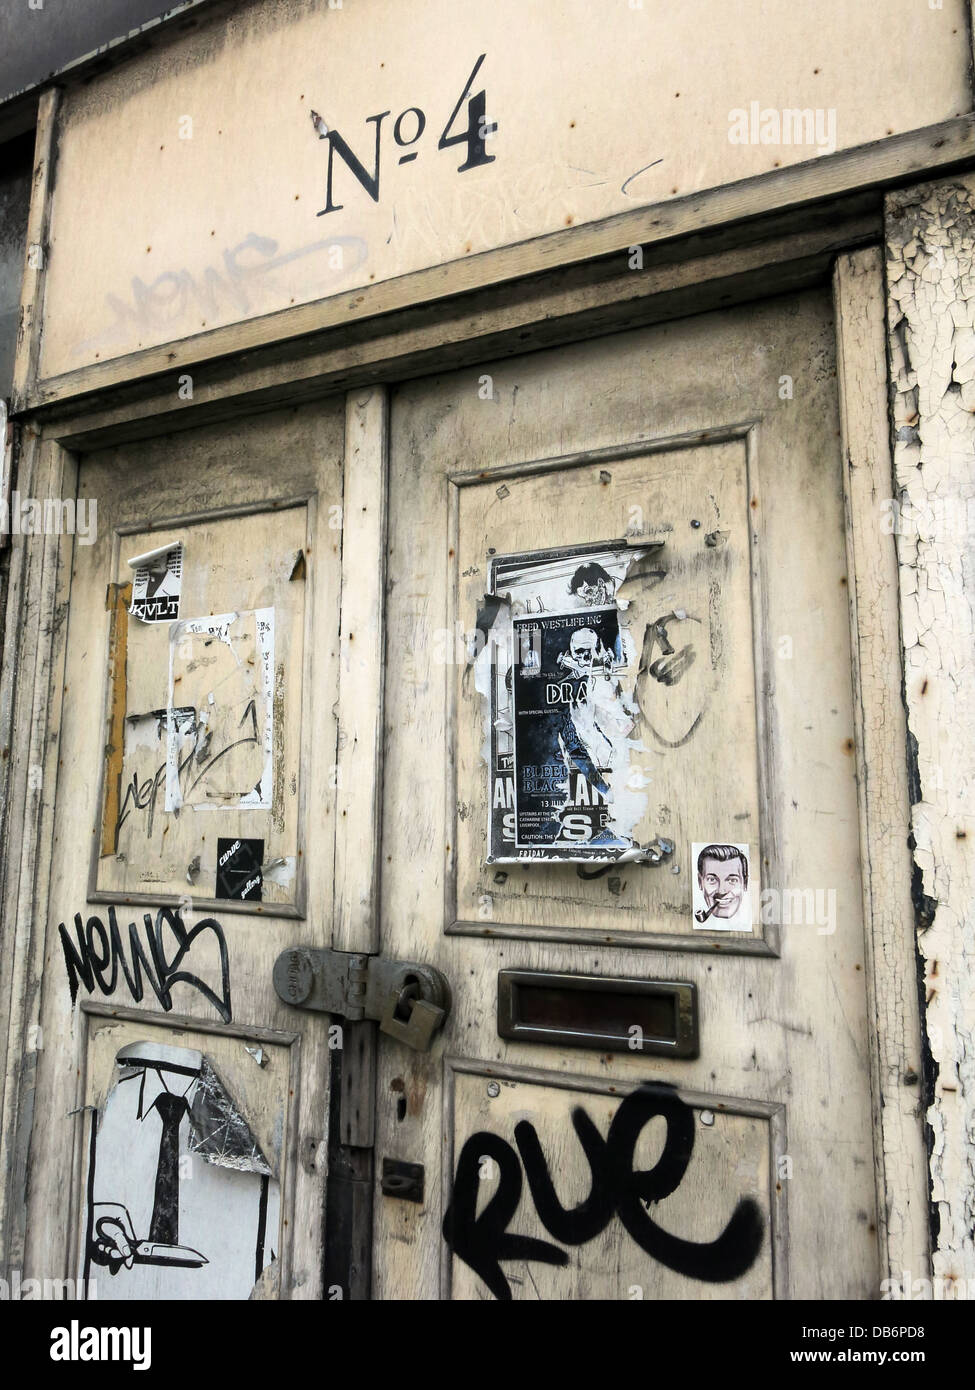 No4, vieille porte,bâtiment abandonné avec affiches, Liverpool, Merseyside, North West England, UK Banque D'Images